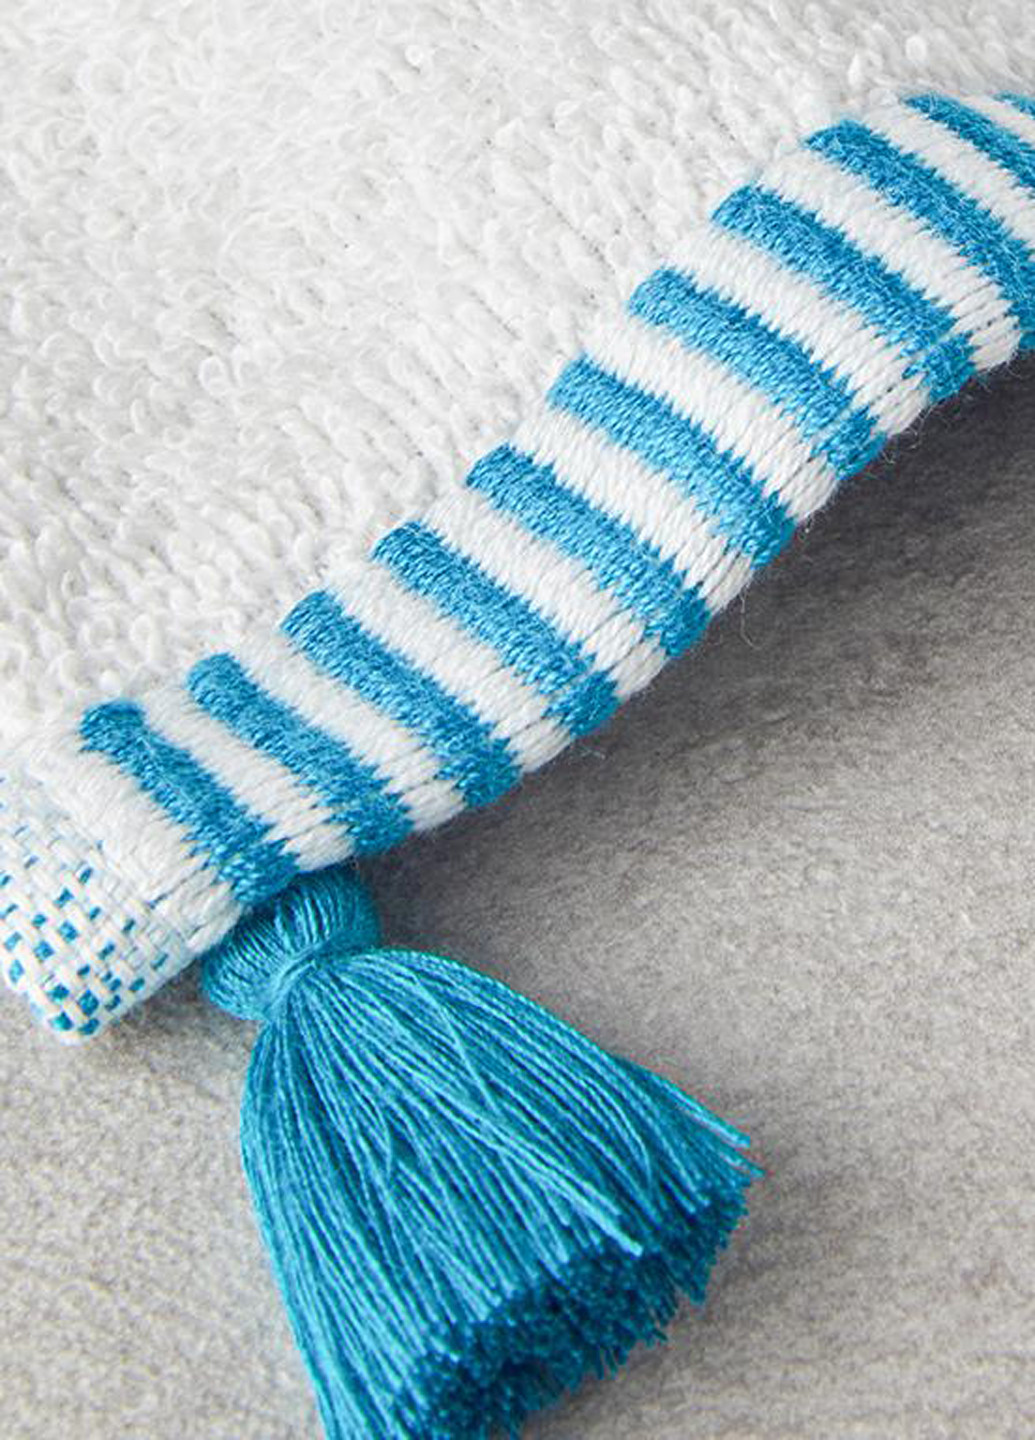 English Home полотенце для рук, 30х45 см полоска голубой производство - Турция